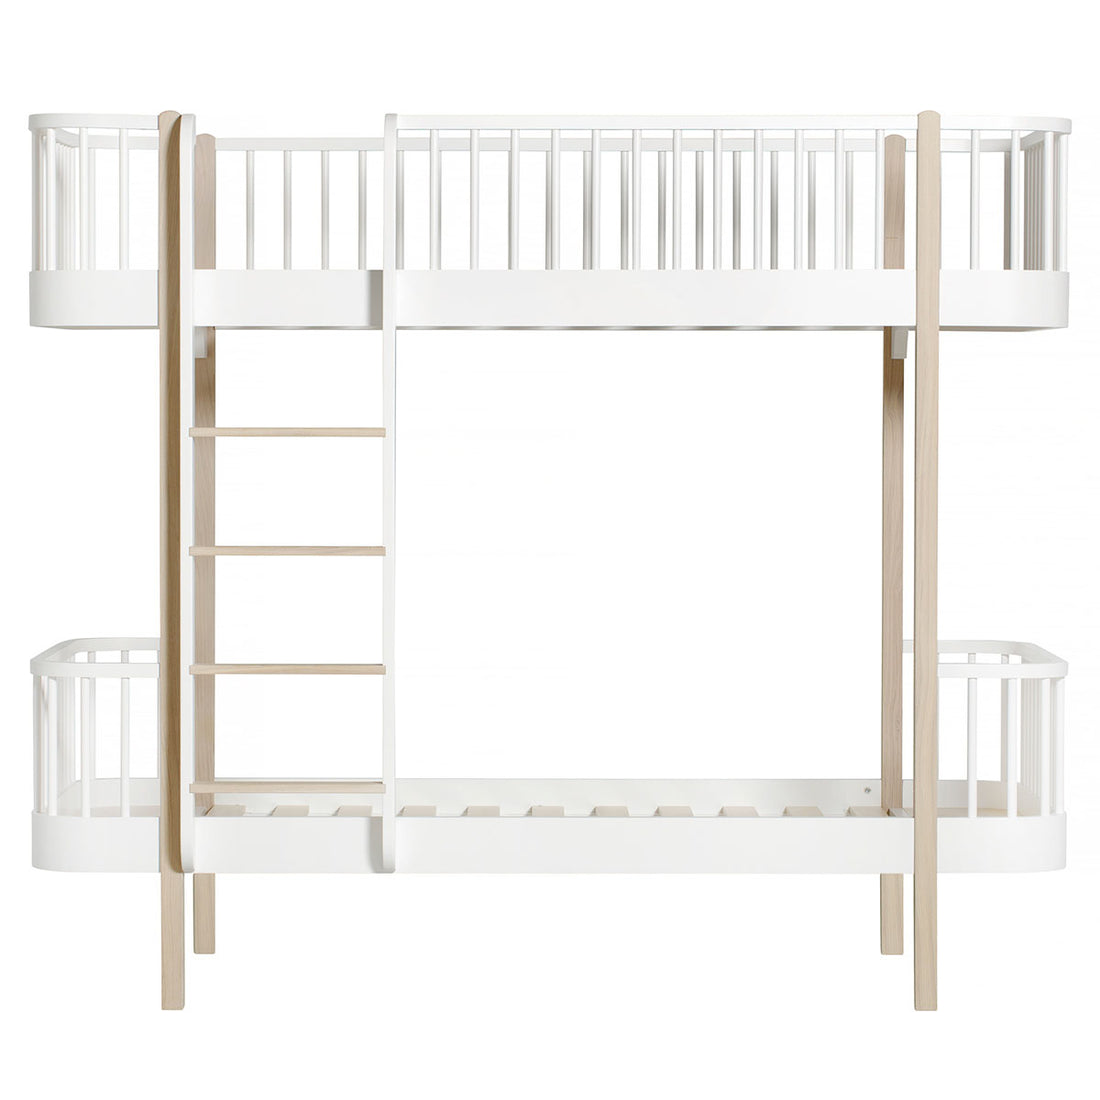 oliver-furniture-wood-bunk-bed-ladder-front-white-oak- (1)